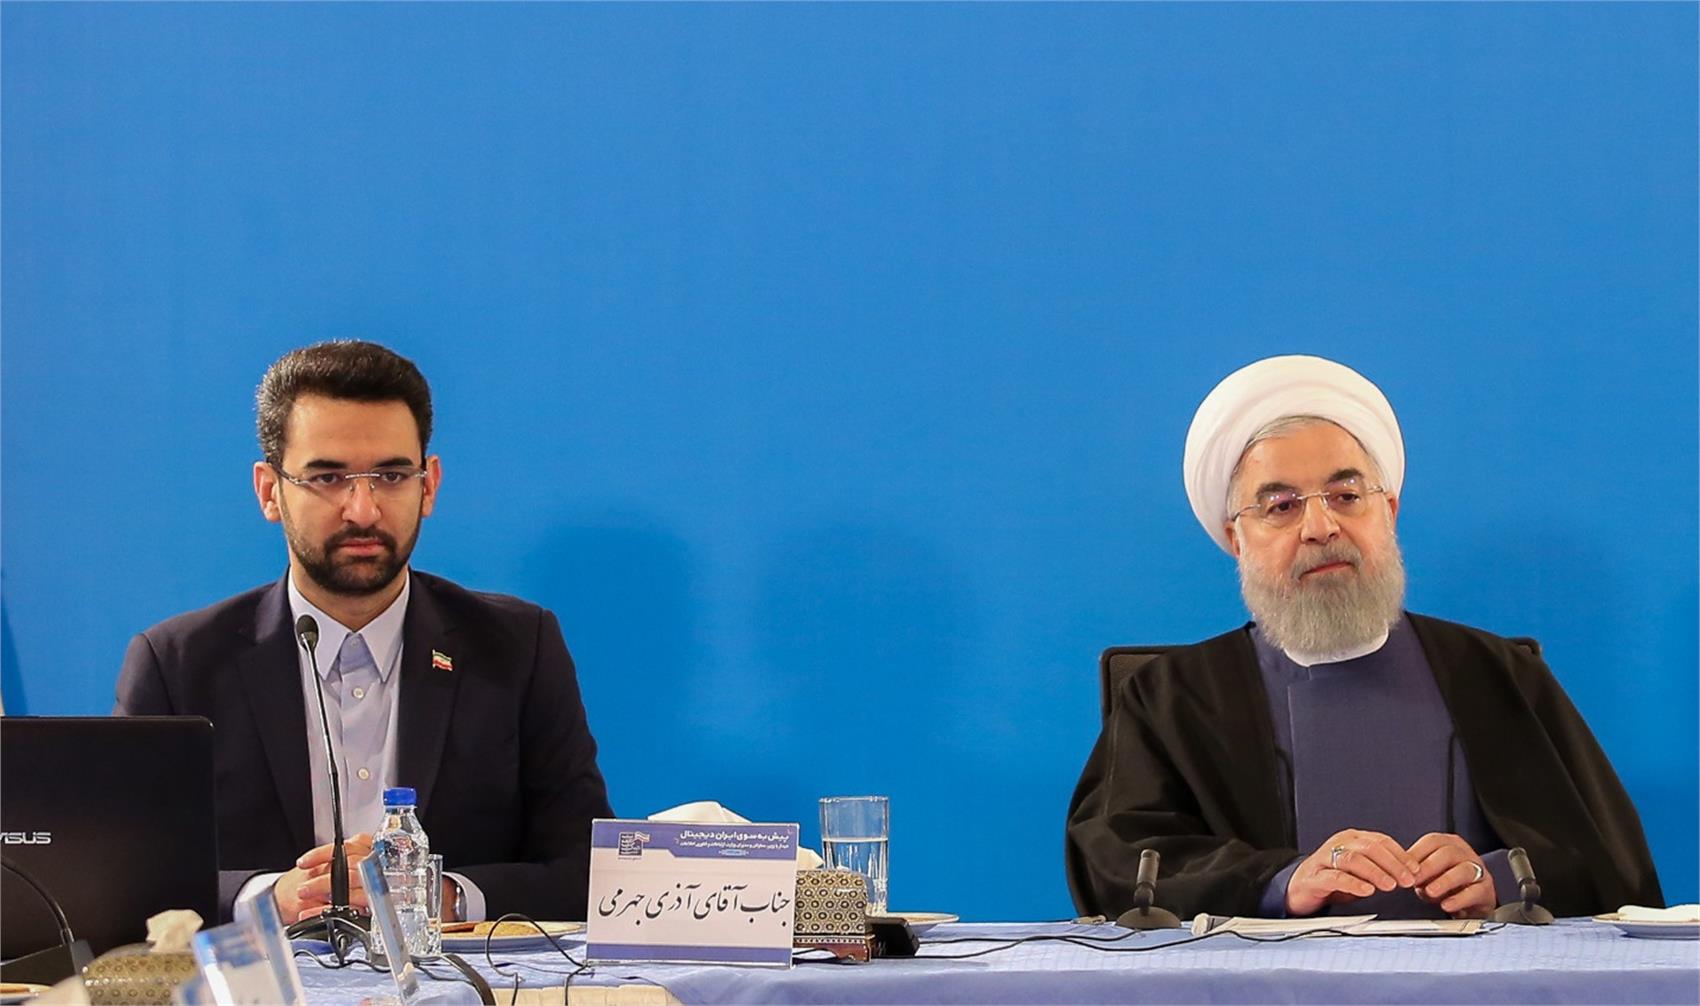 جهرمی در حضور رییس جمهور آخرین آمارهای حوزه فناوری اطلاعات ایران را اعلام کرد